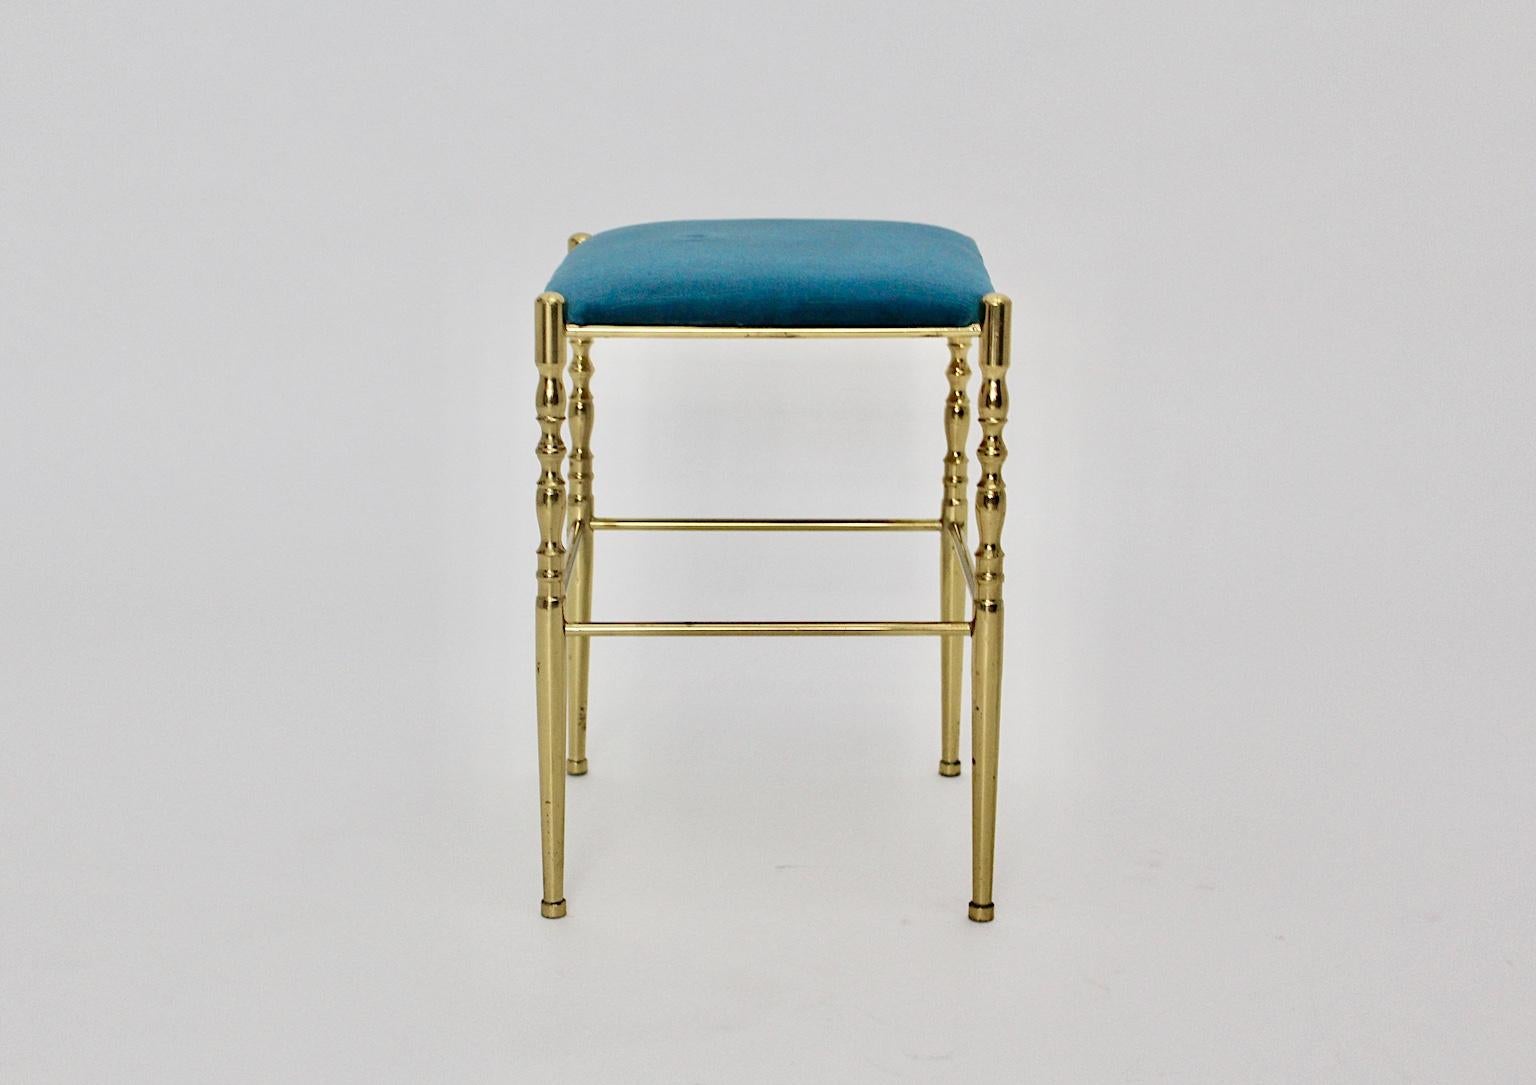 Mid-Century Modern vintage Messing Hocker Chiavari 1950er Jahre Italien, die einen Messingrahmen und einen gepolsterten Sitz zeigt.
Der Sitz ist neu mit blauem Samtstoff bezogen und in sehr gutem Zustand, während das Messinggestell leichte